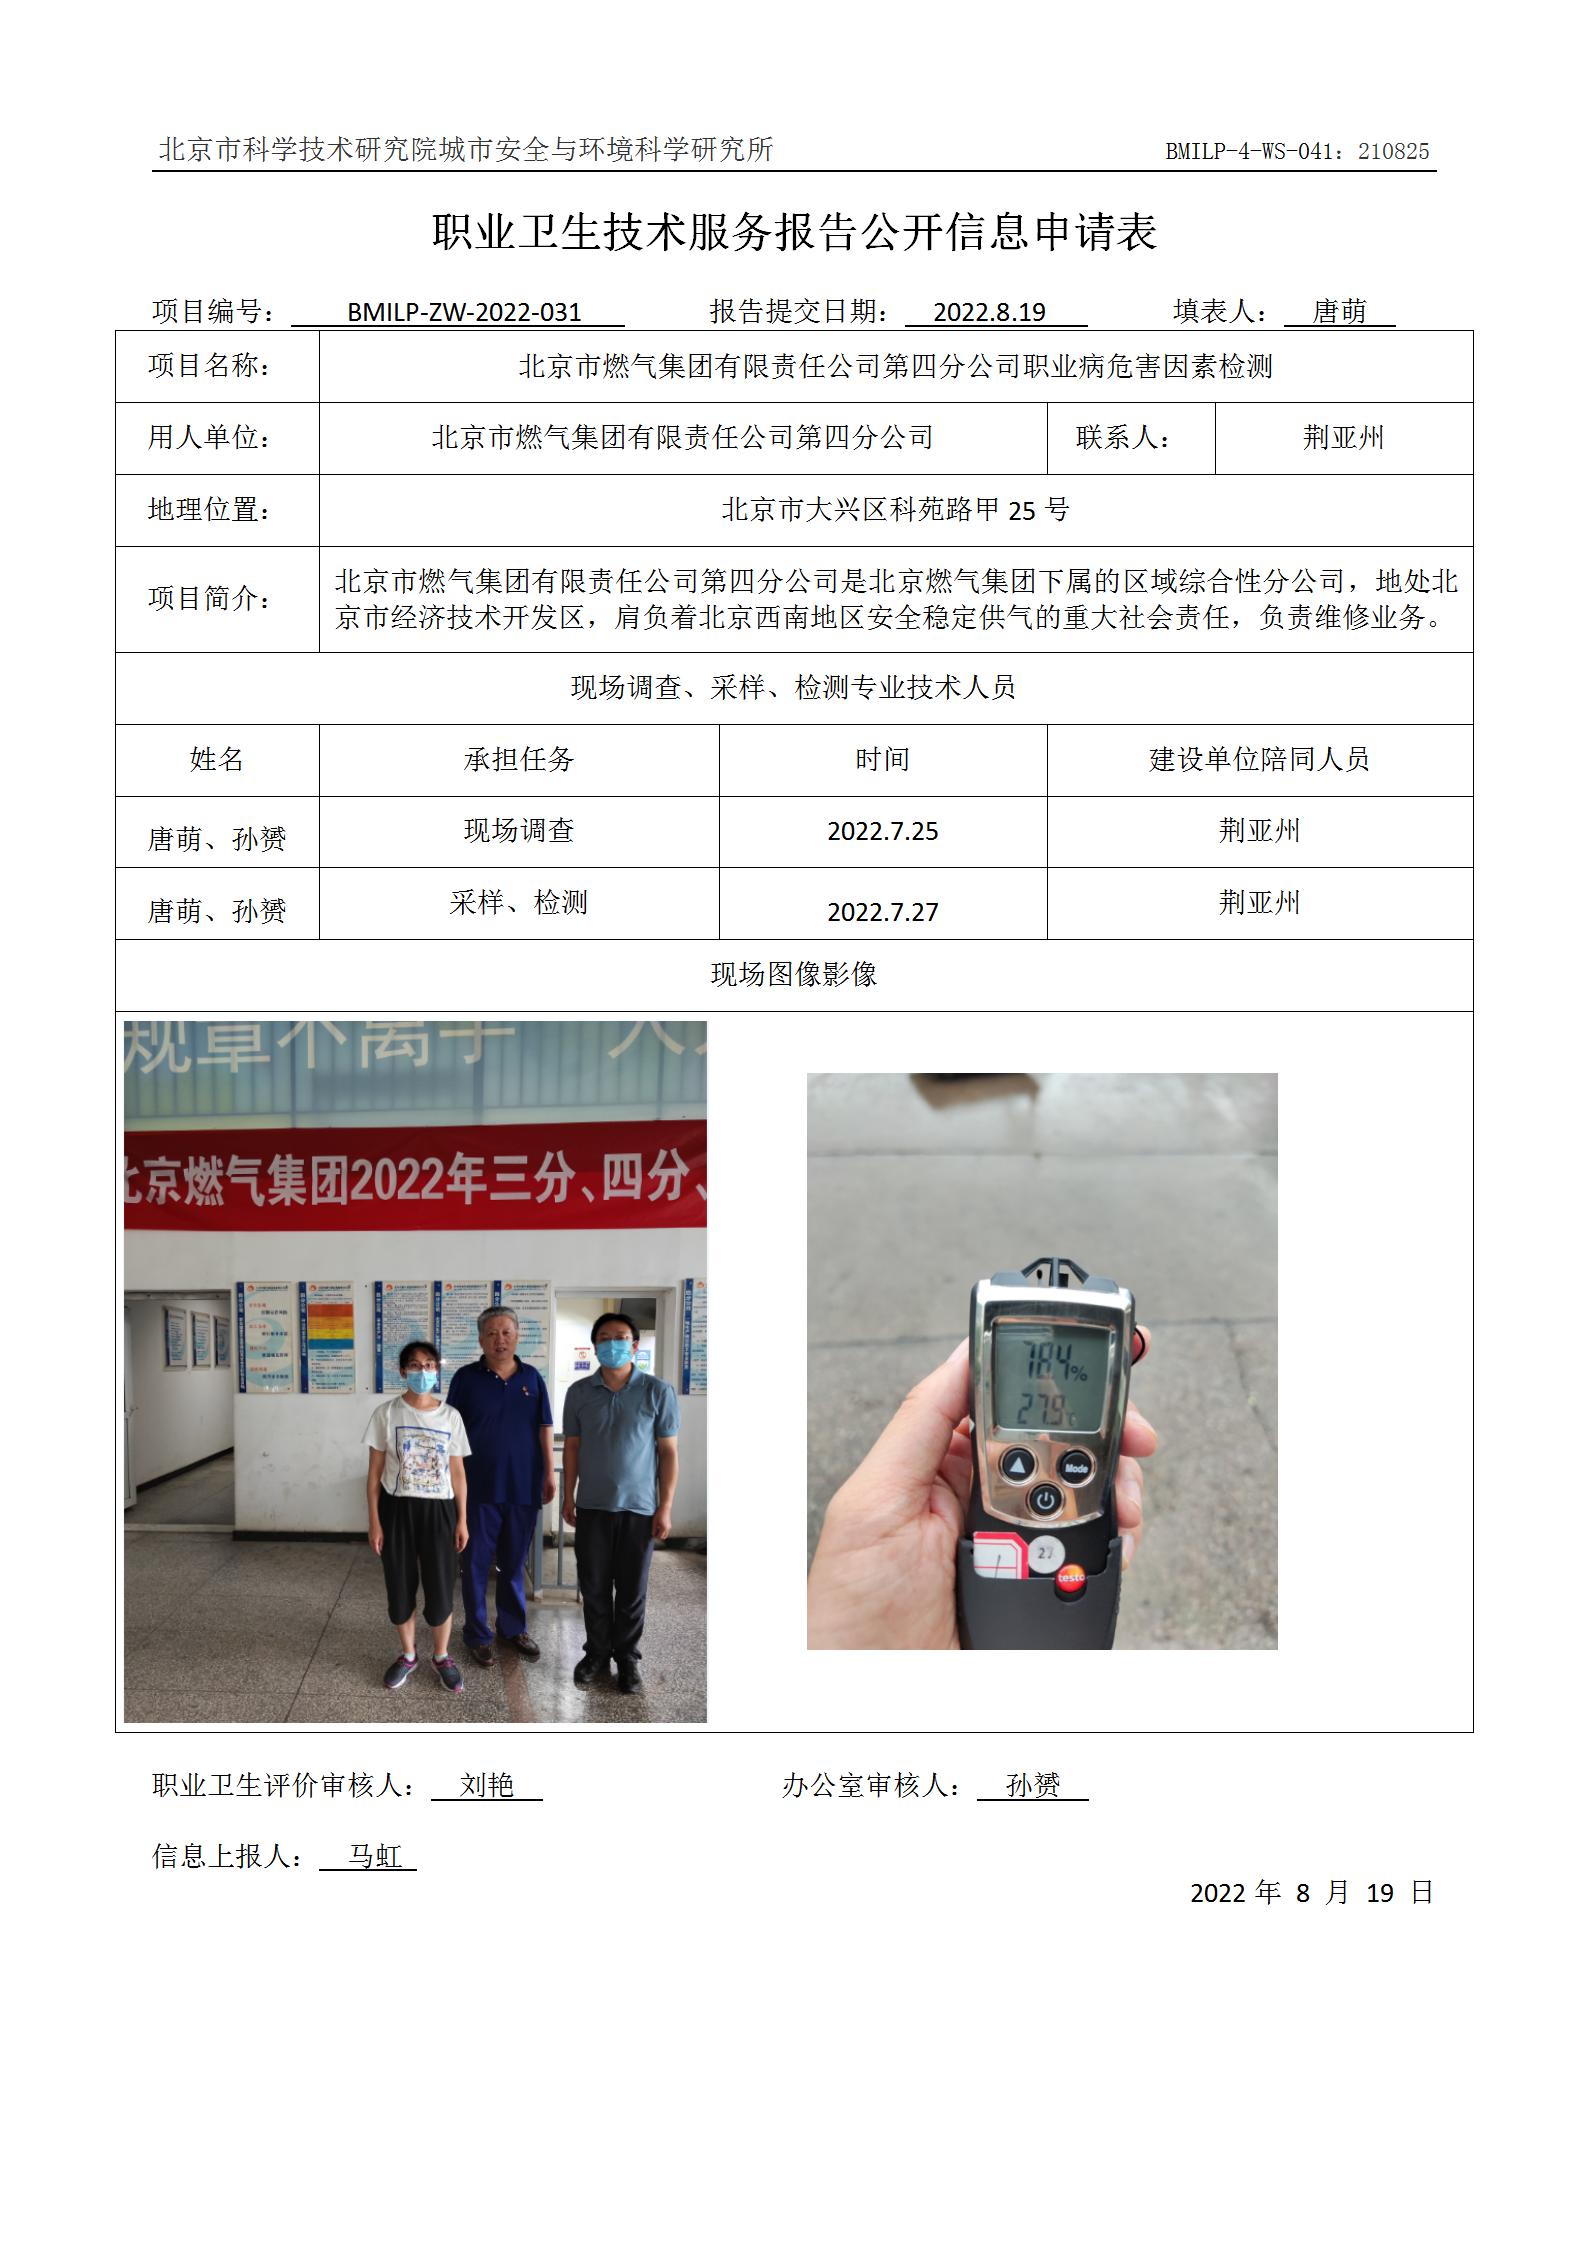 北京市燃气集团有限责任公司第四分公司职业病危害因素检测